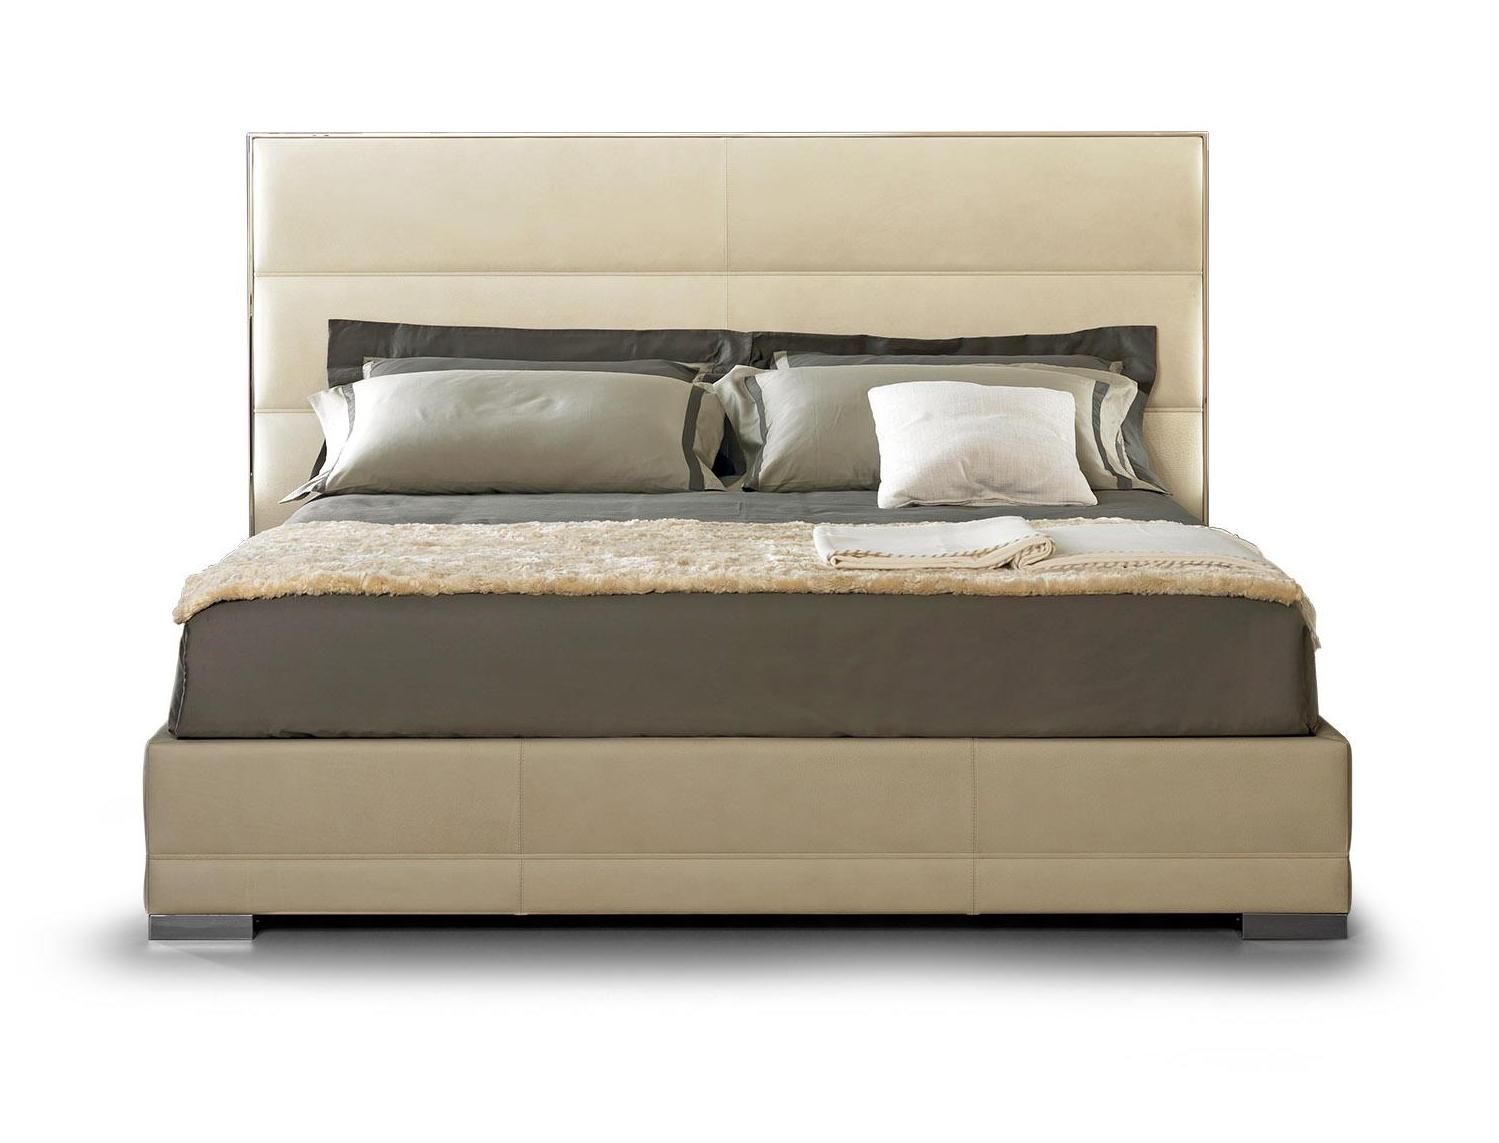 Italian Bed with Headboard